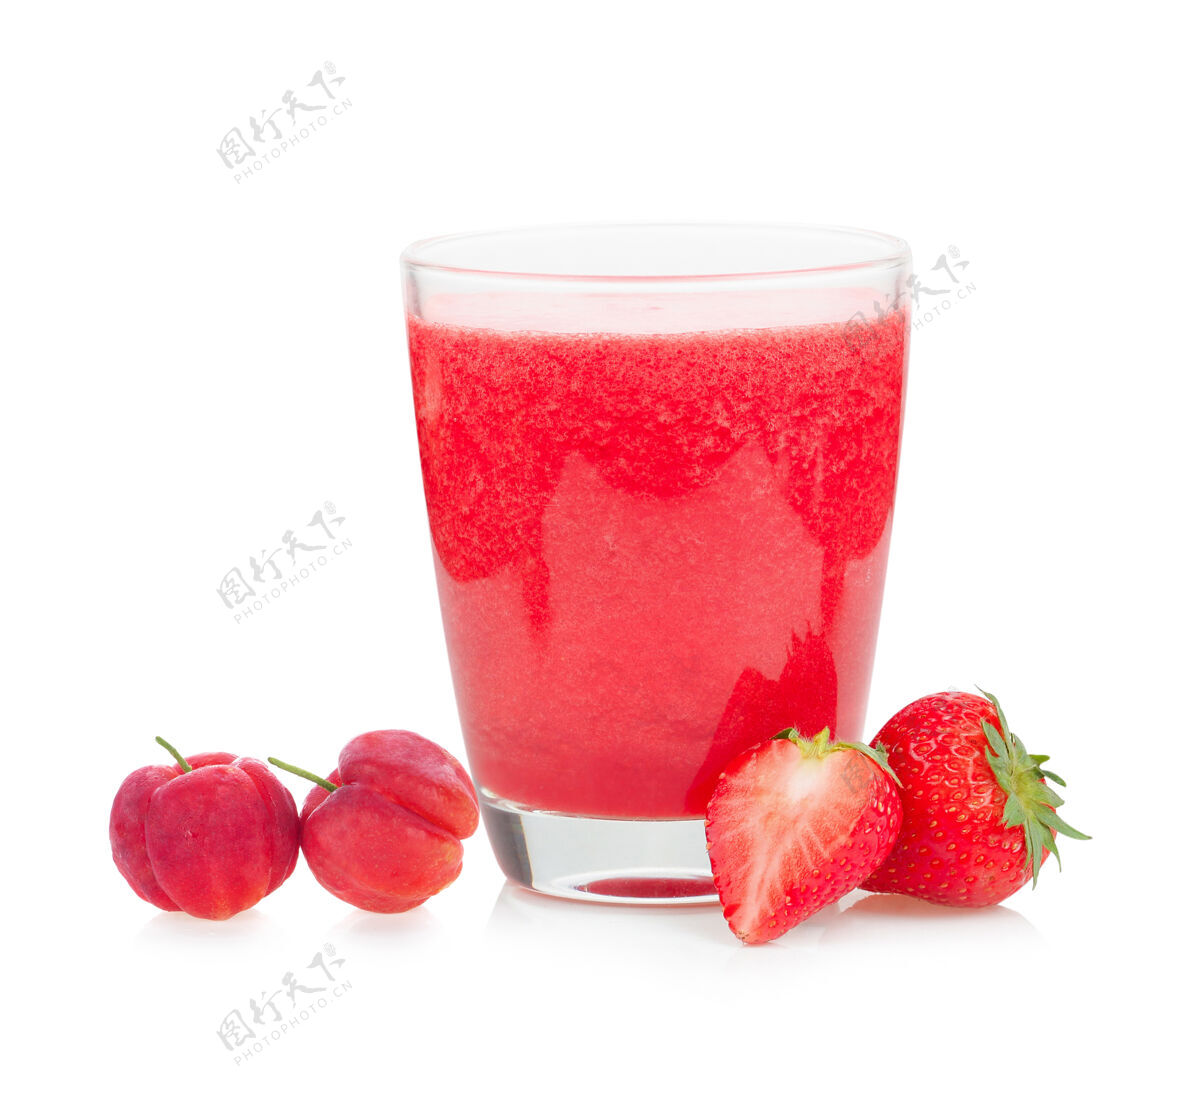 冰沙草莓冰沙和樱桃水果隔离在白色表面上早餐新鲜奶昔